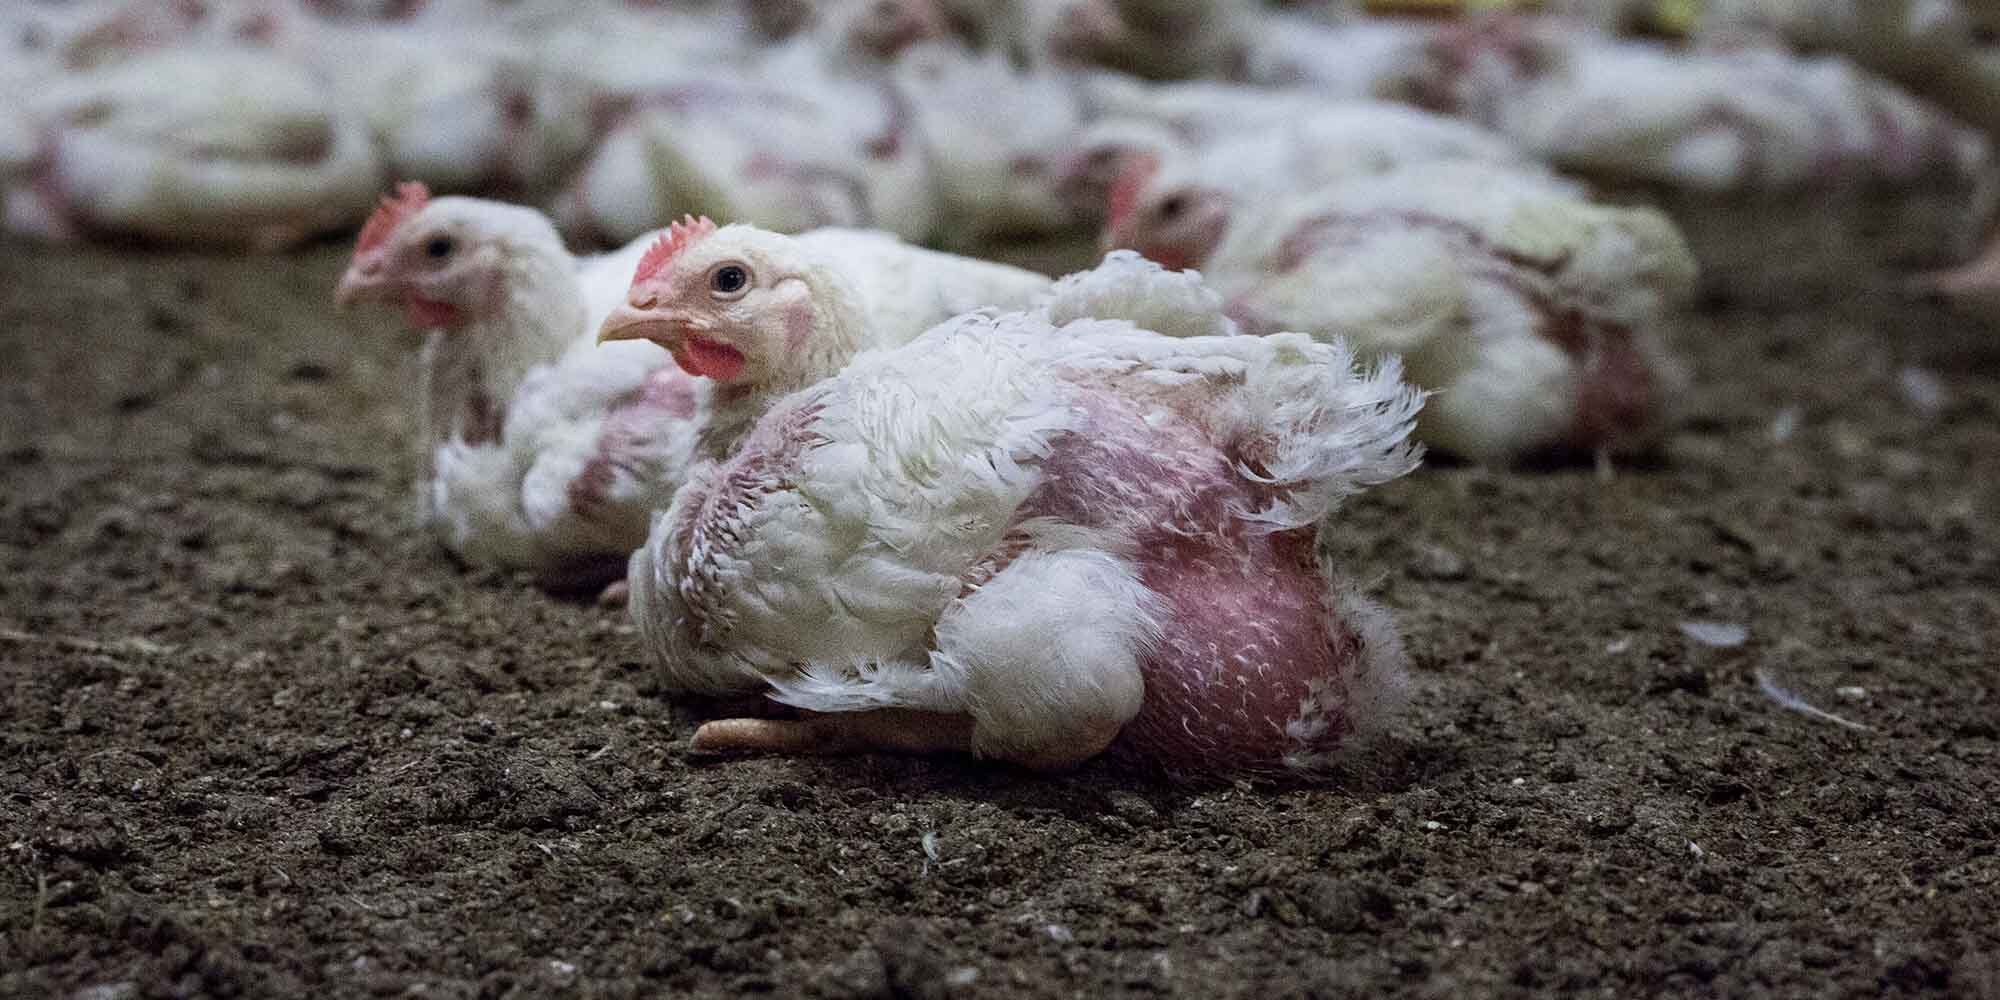 die Hühner in der industriellen Tierhaltung können ihr eigenes Gewicht oft nicht tragen